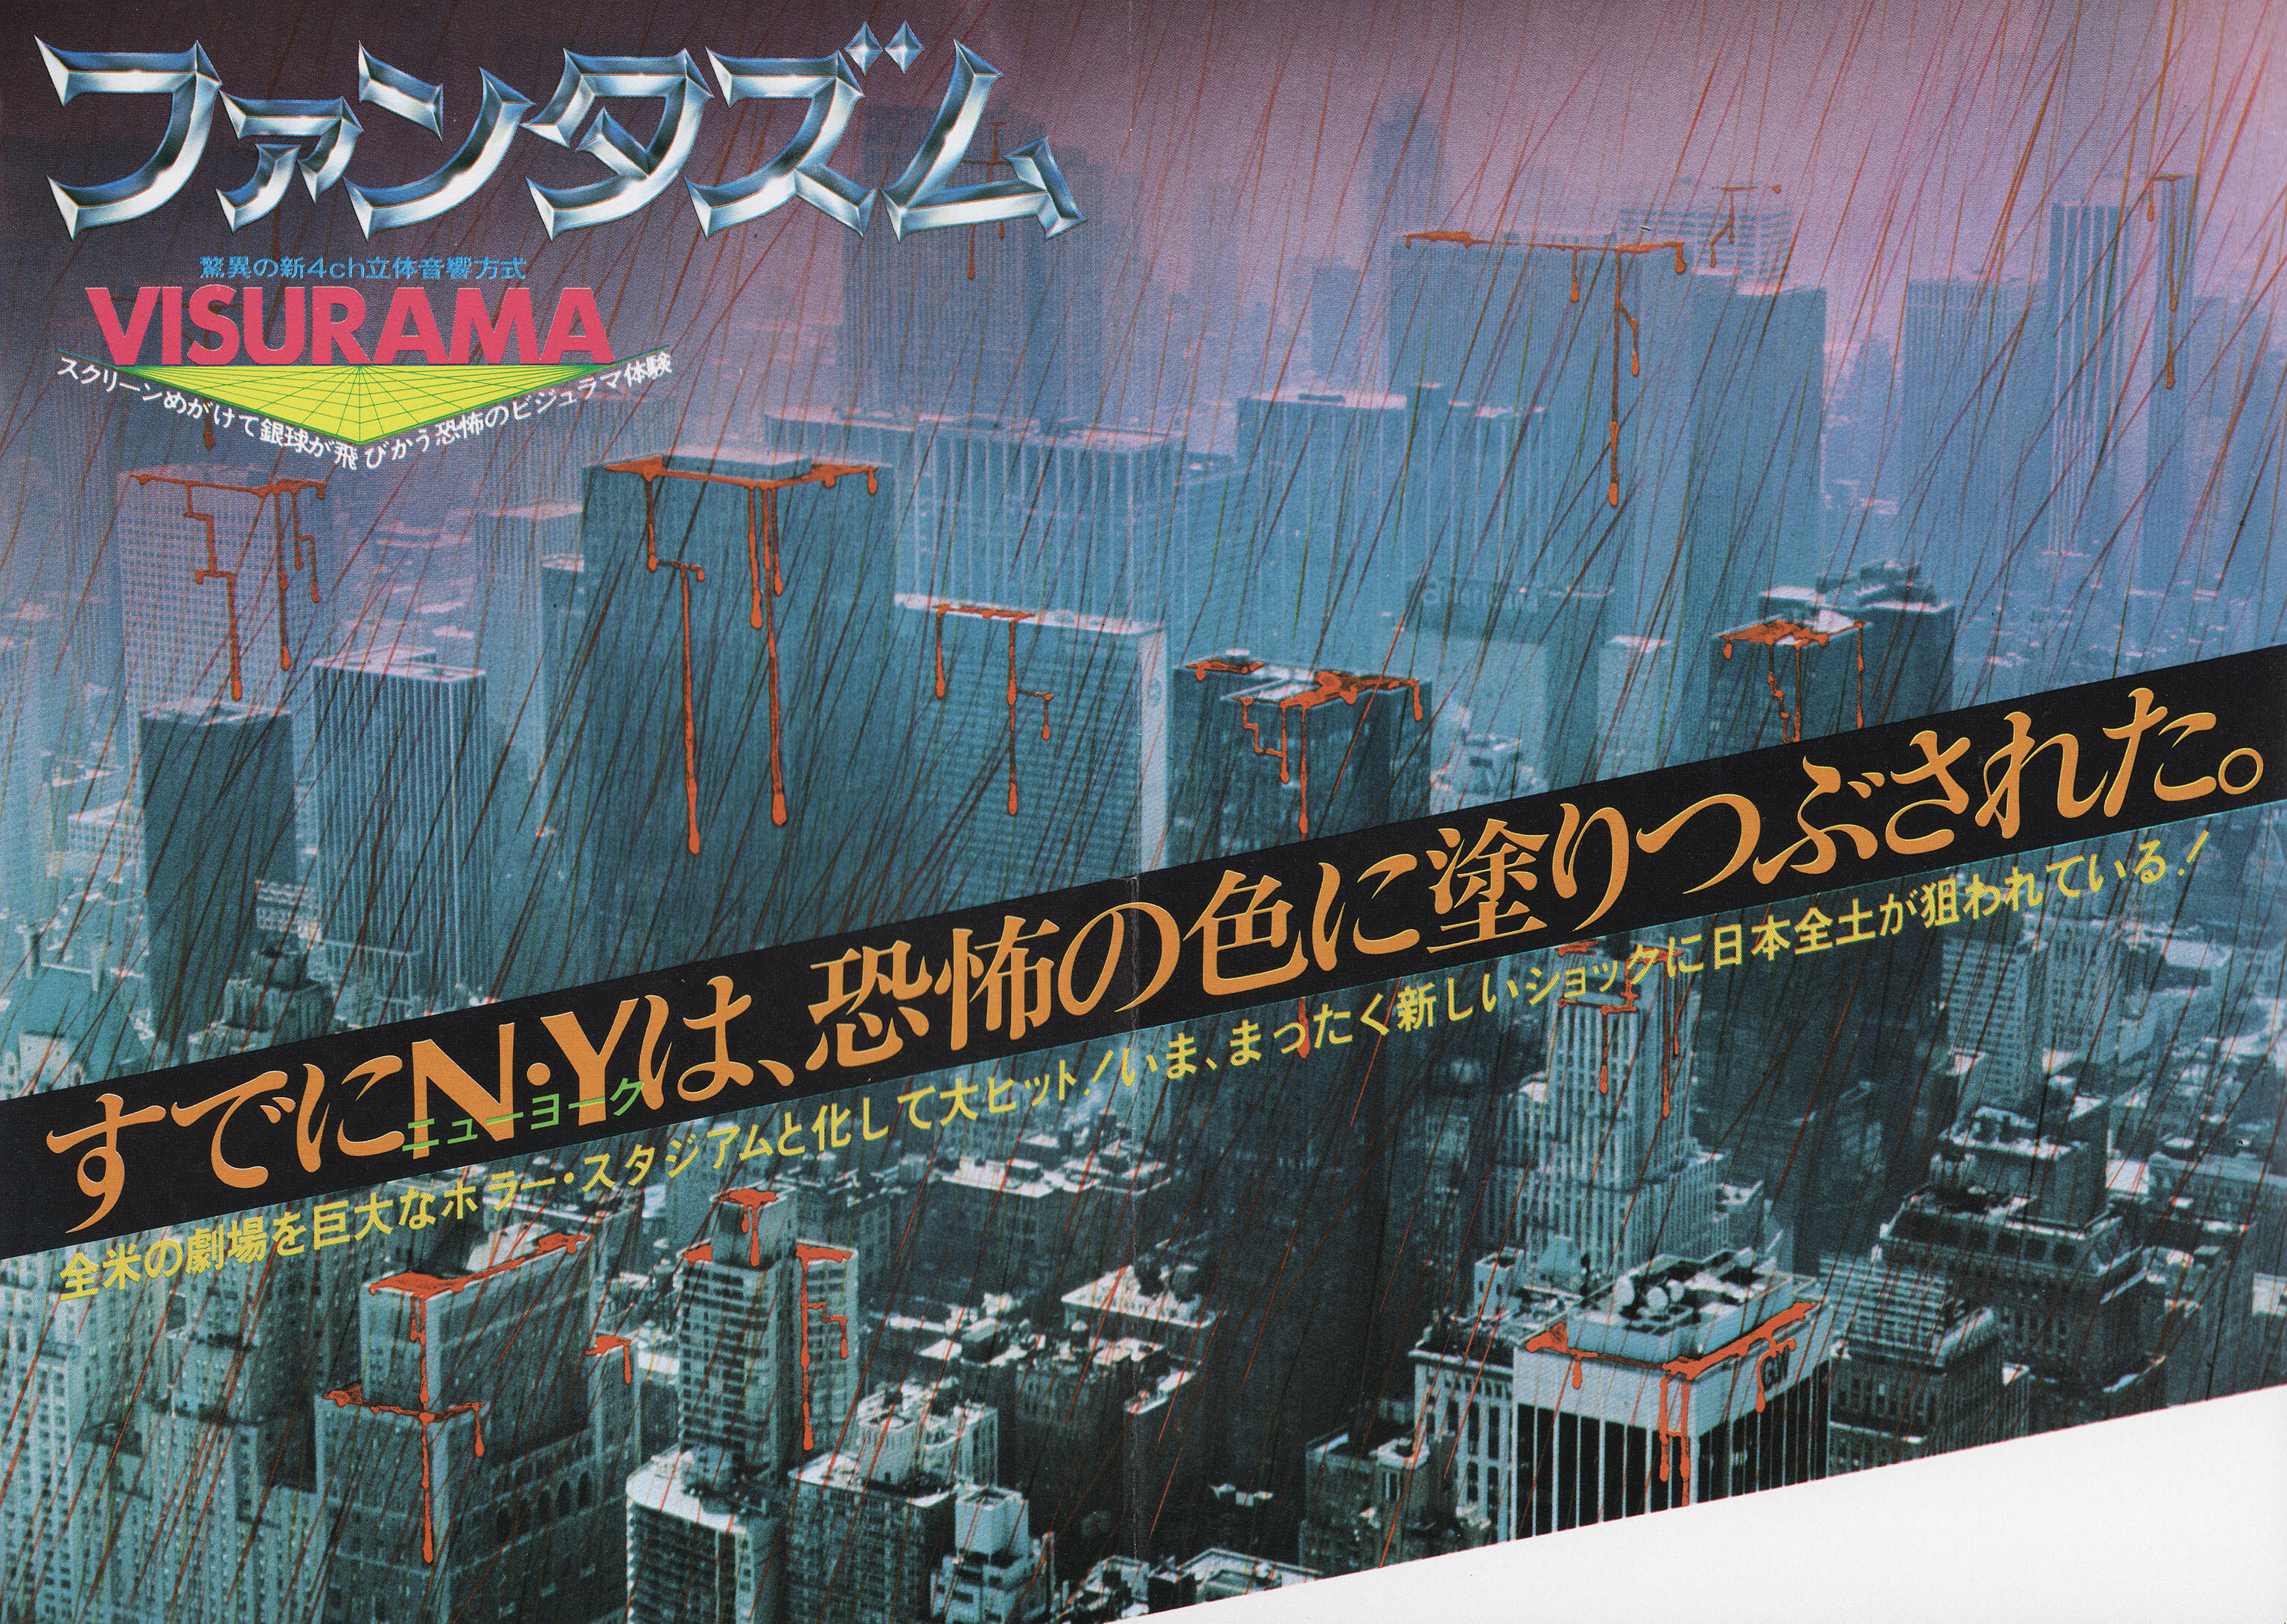 Фантазм (Phantasm, 1979), режиссёр Дон Коскарелли, японский постер к фильму (ужасы, 1979 год) (1)